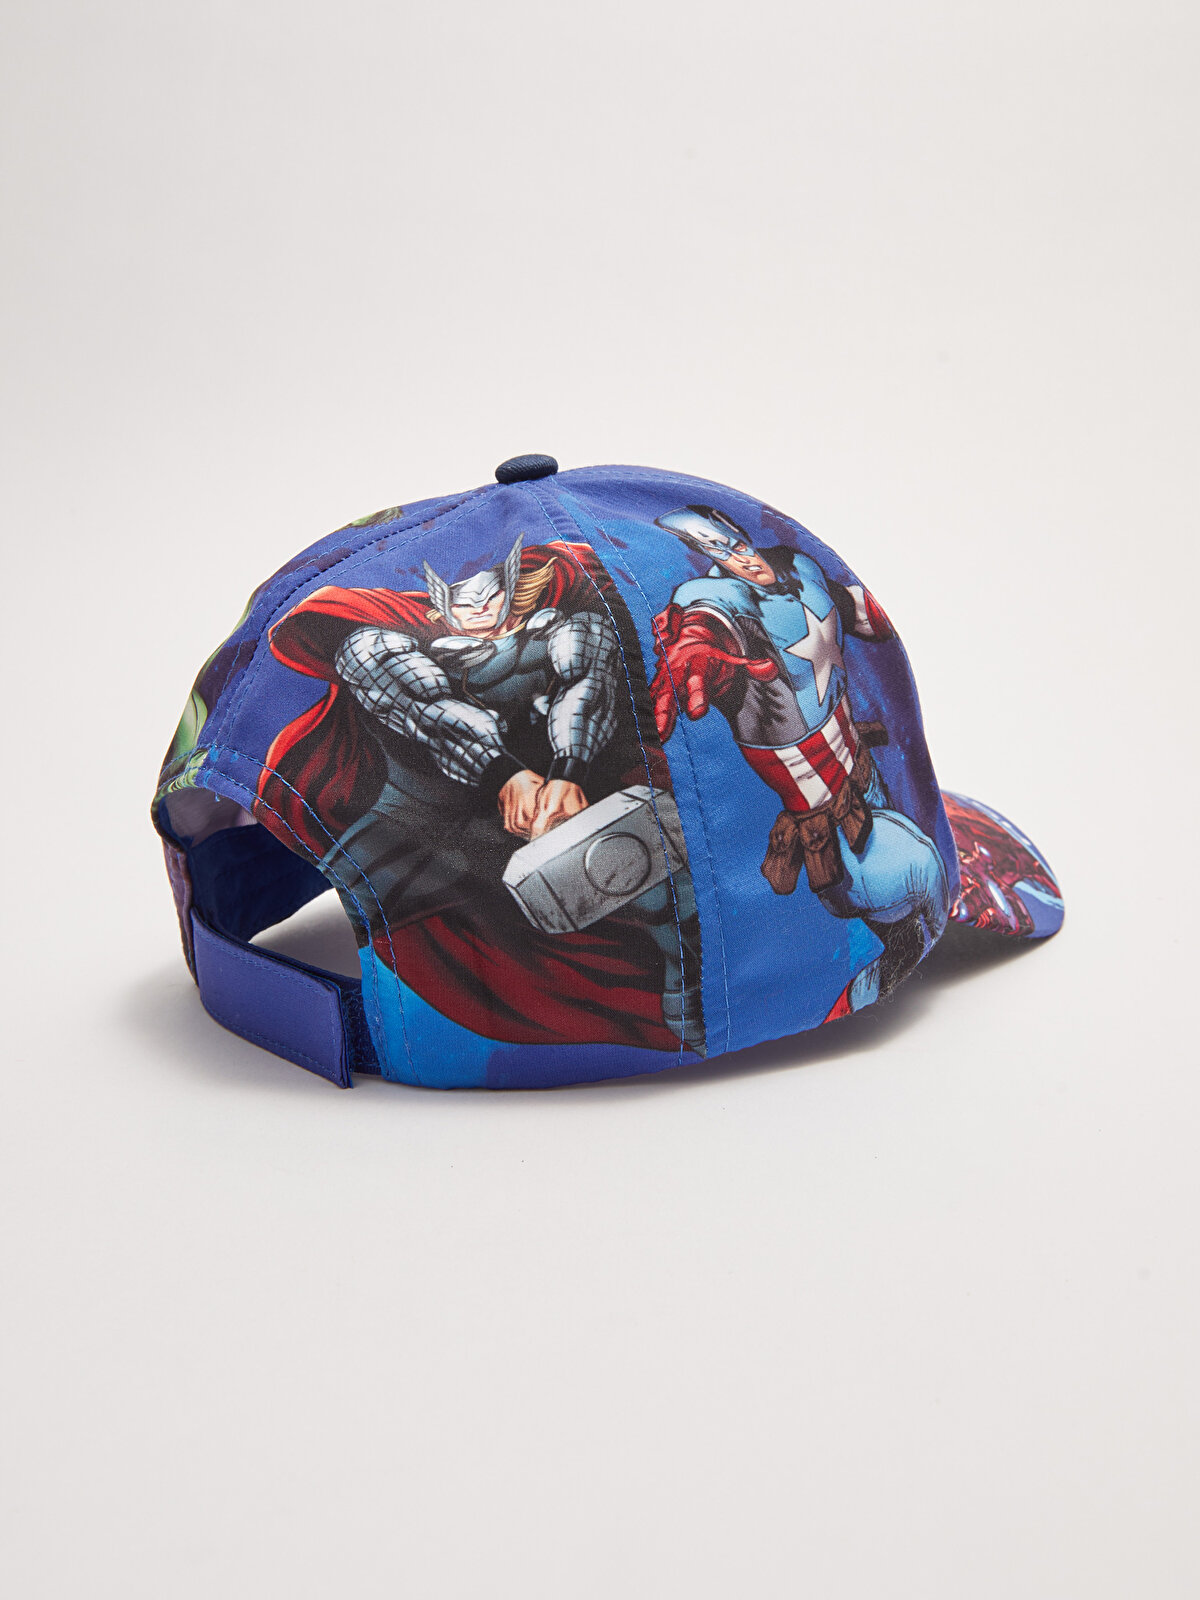 Avengers Licensed Boy Cap Hat -S23688Z4-F9C - S23688Z4-F9C - LC 